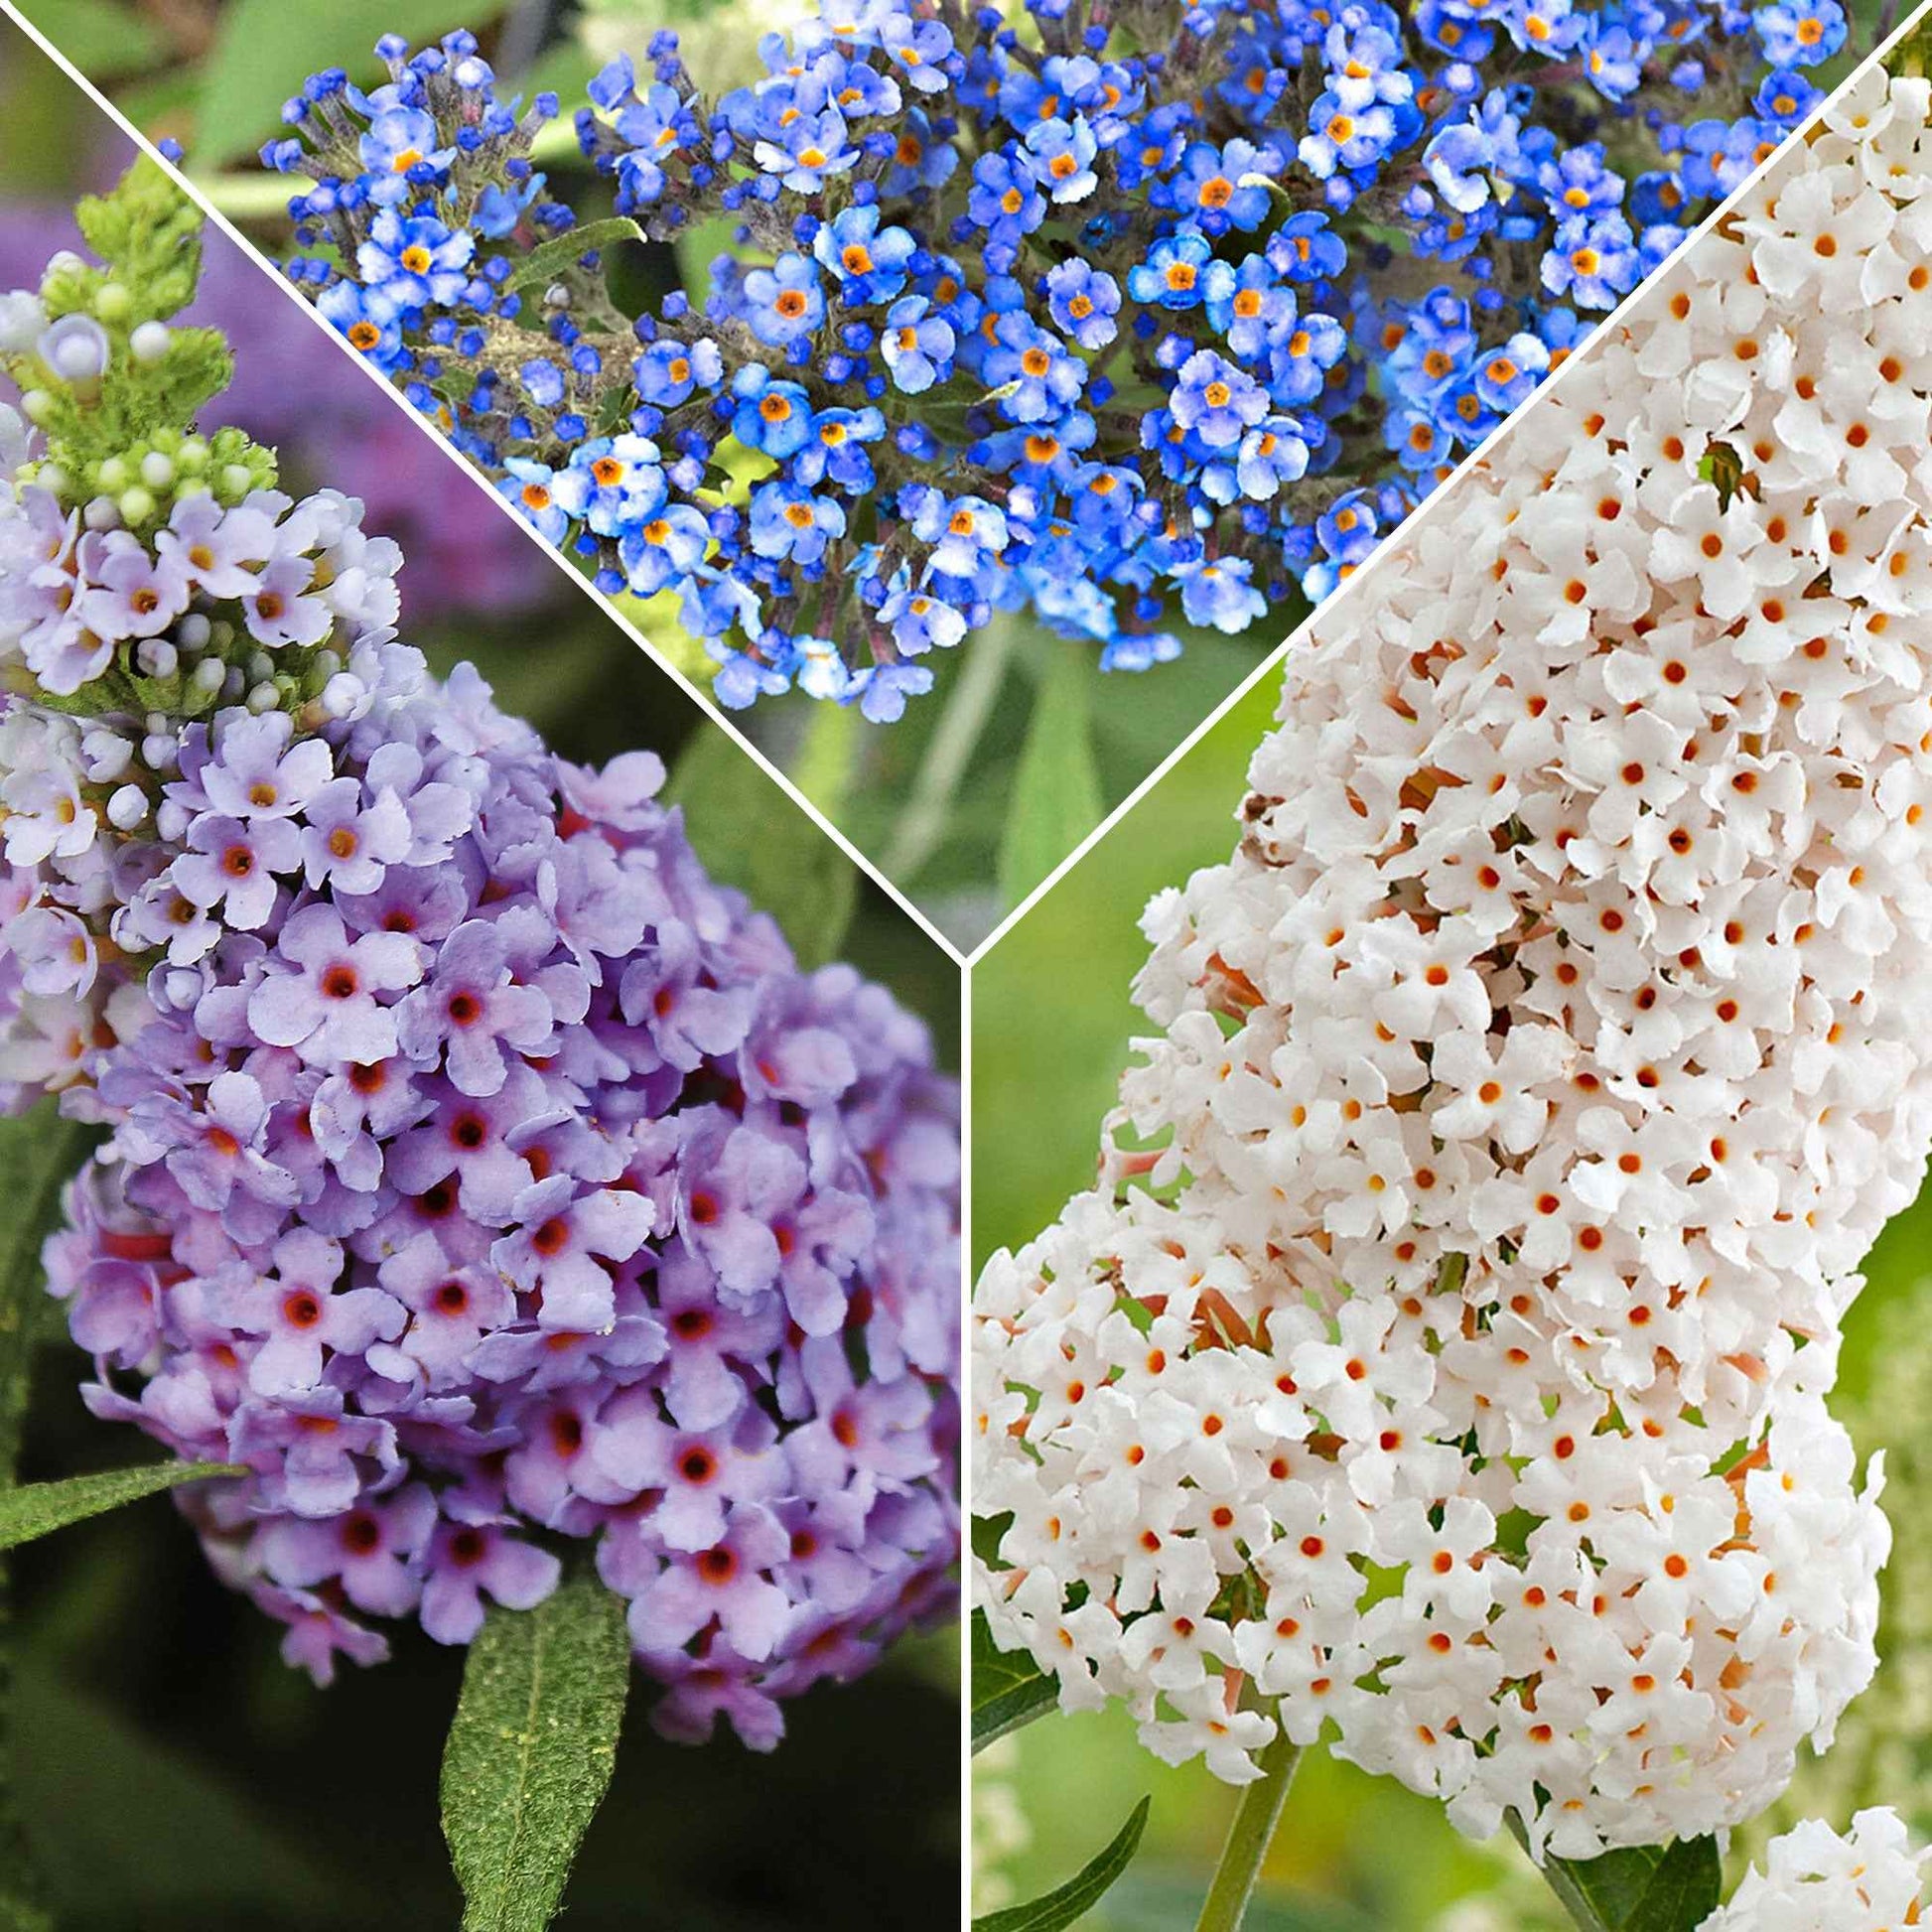 3x Arbre à papillons Buddleja 'Lilac Turtle' + 'White Swan' + 'Blue Sarah' bleu-violet-blanc - Caractéristiques des plantes